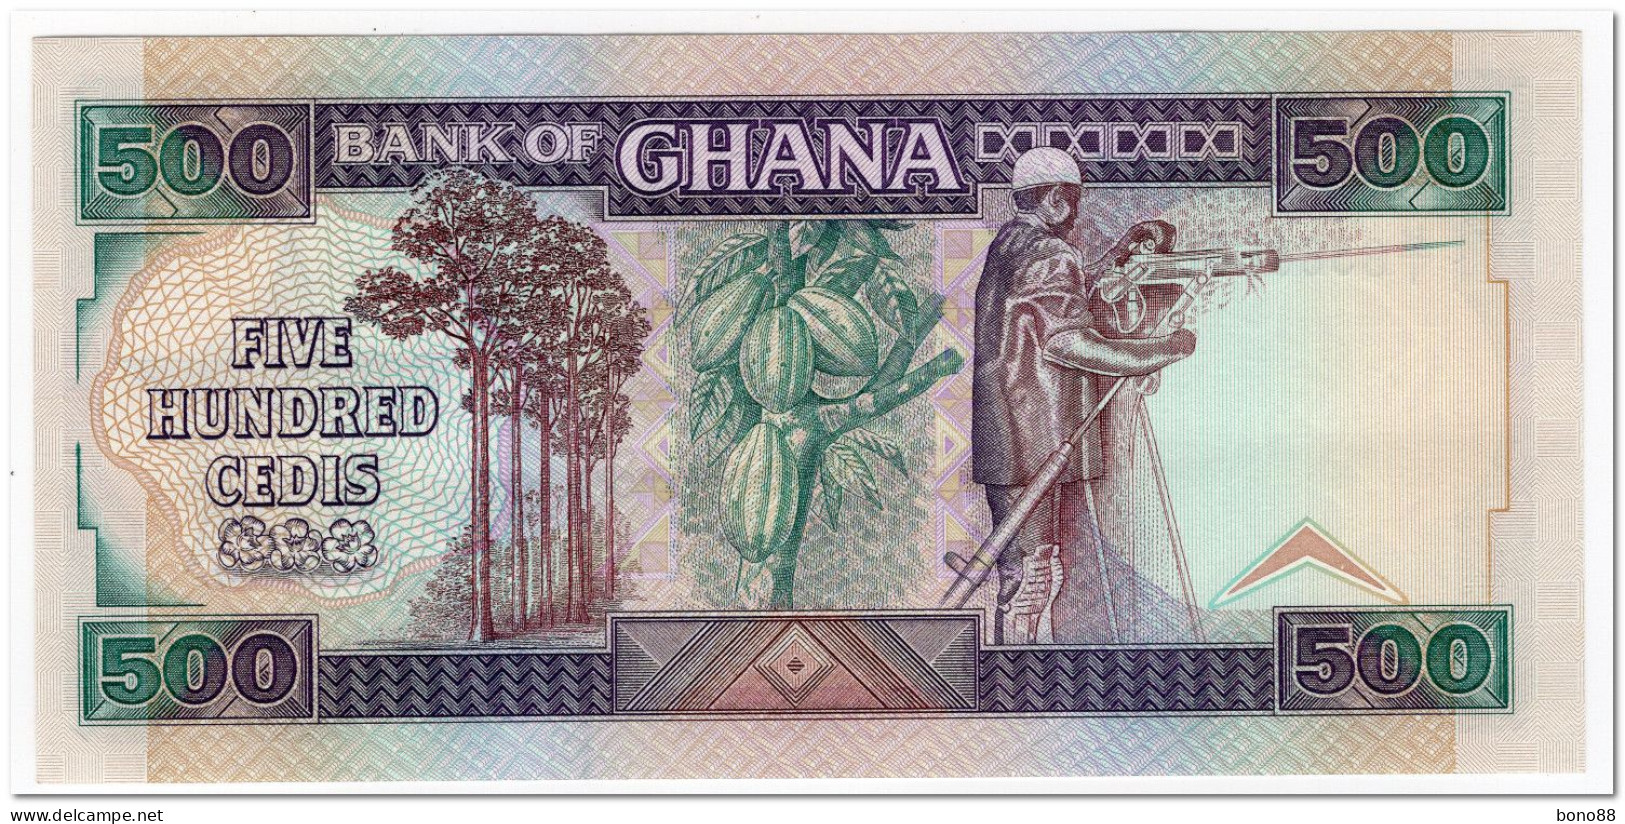 GHANA,500 CEDIS,1989,RADAR SERIAL NUMBER,P.28b,UNC - Ghana